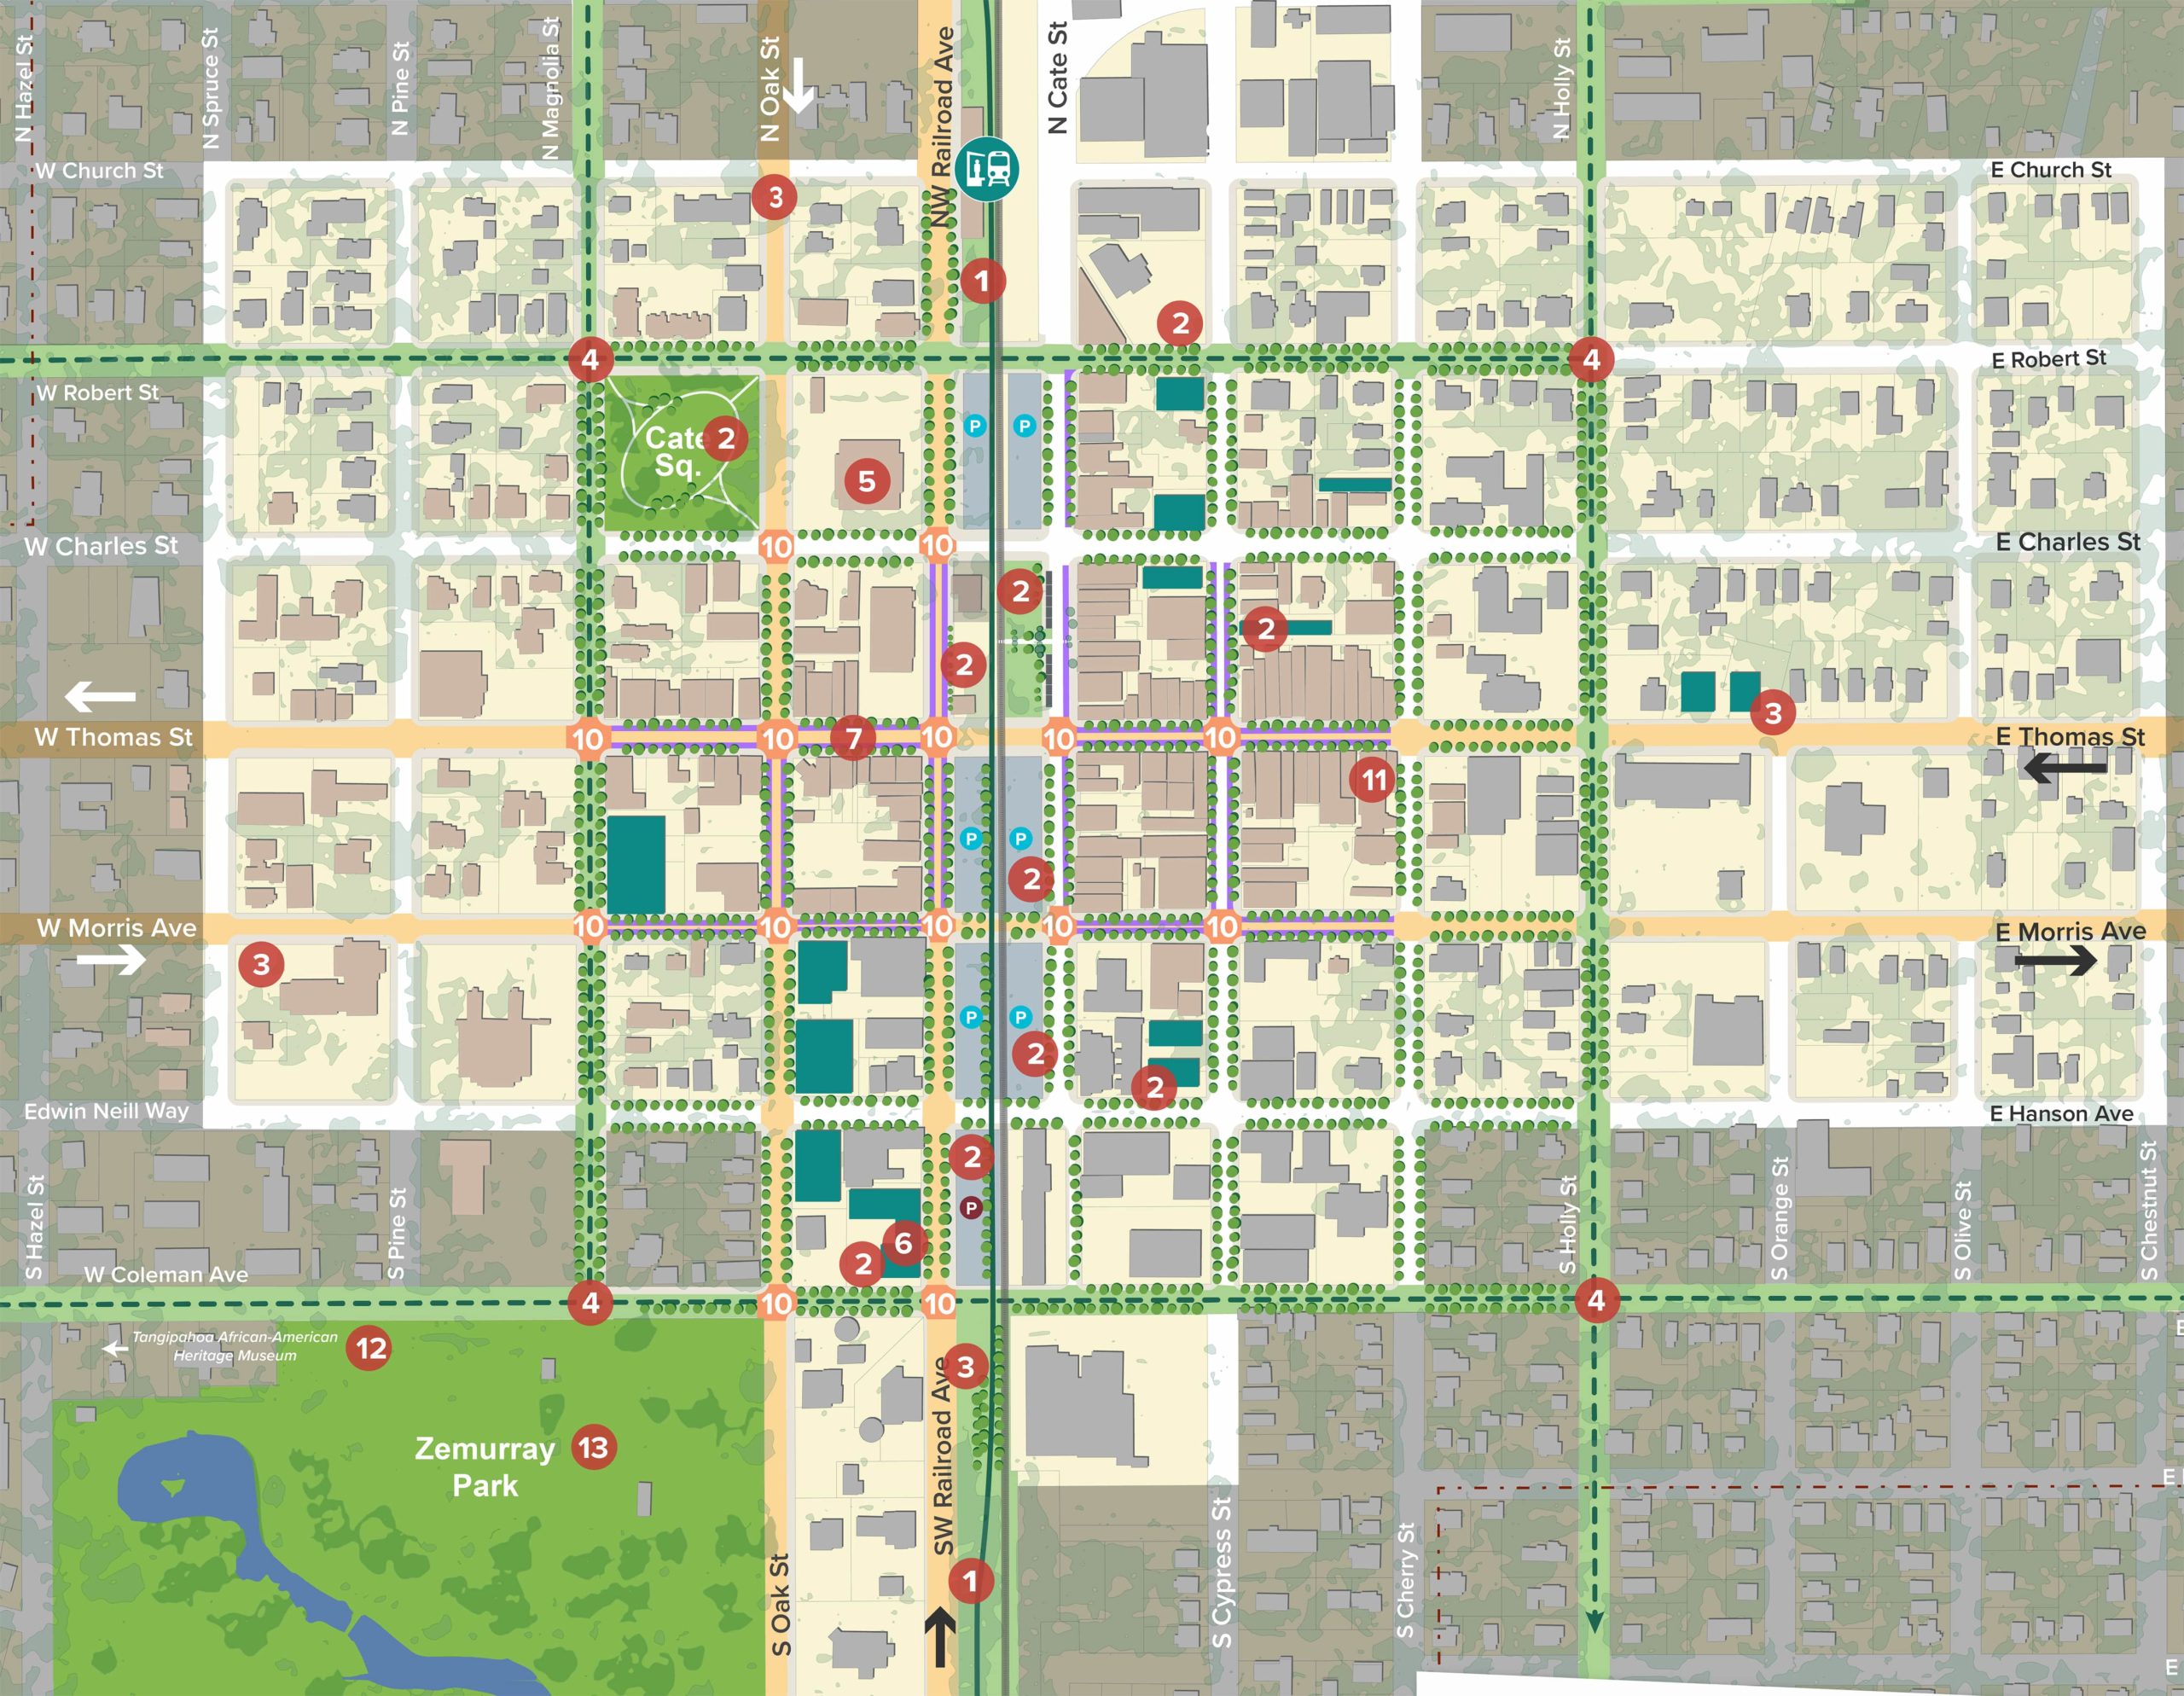 Downtown Hammond Master Plan Update